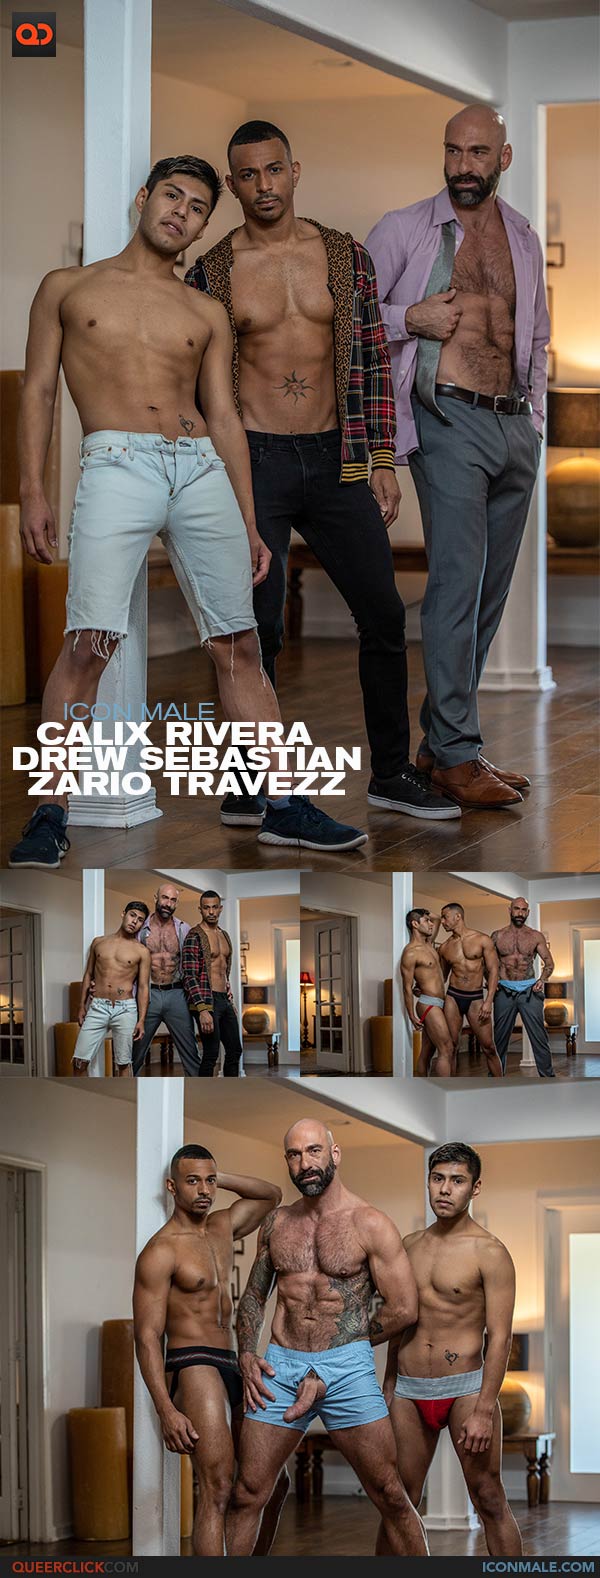 IconMale: Calix Rivera, Drew Sebastian and Zario Travezz